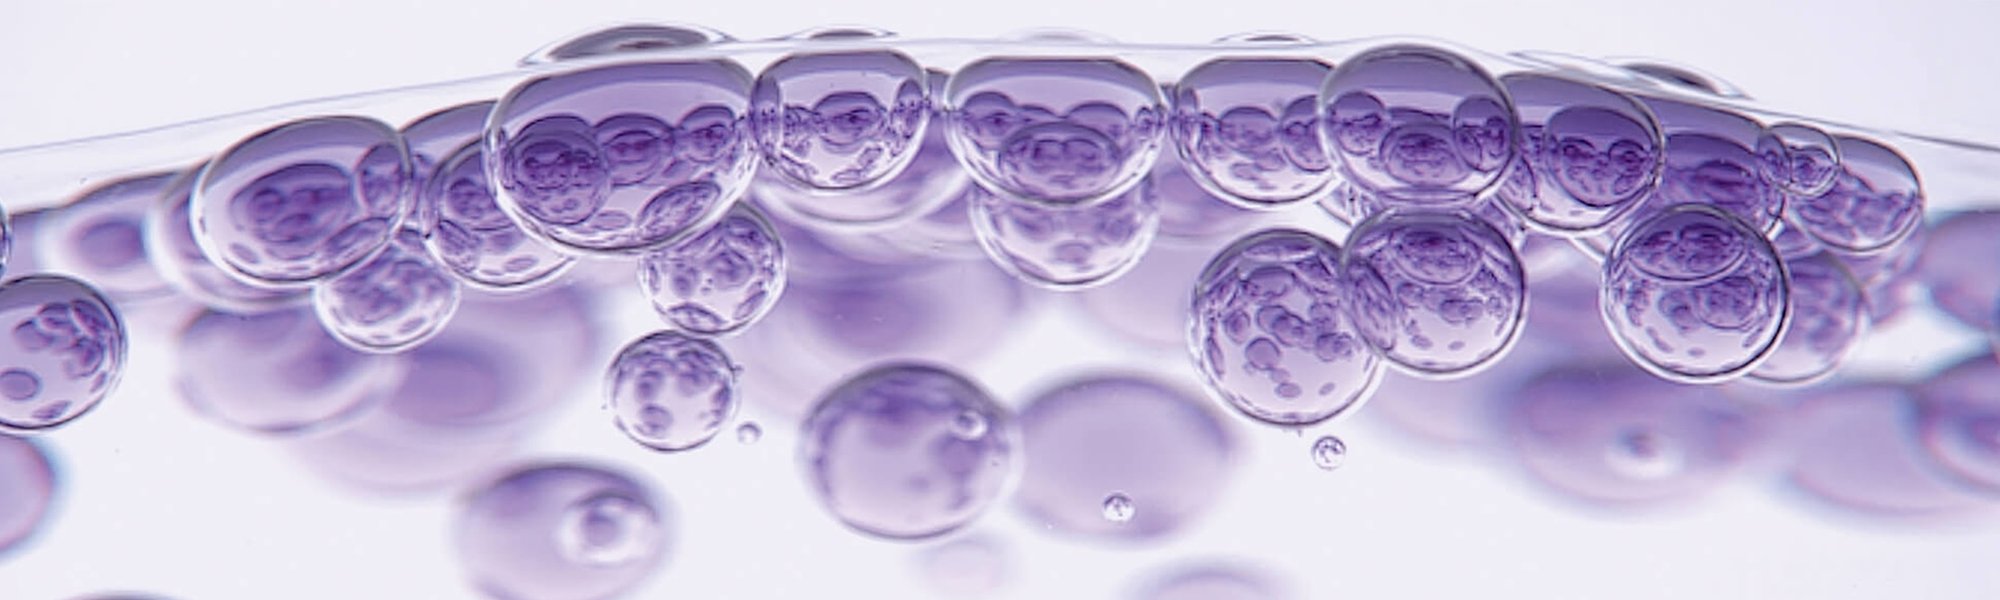 Mikroskopisch vergrößerte lila Bläschen als Darstellung von Hyaluronsäure